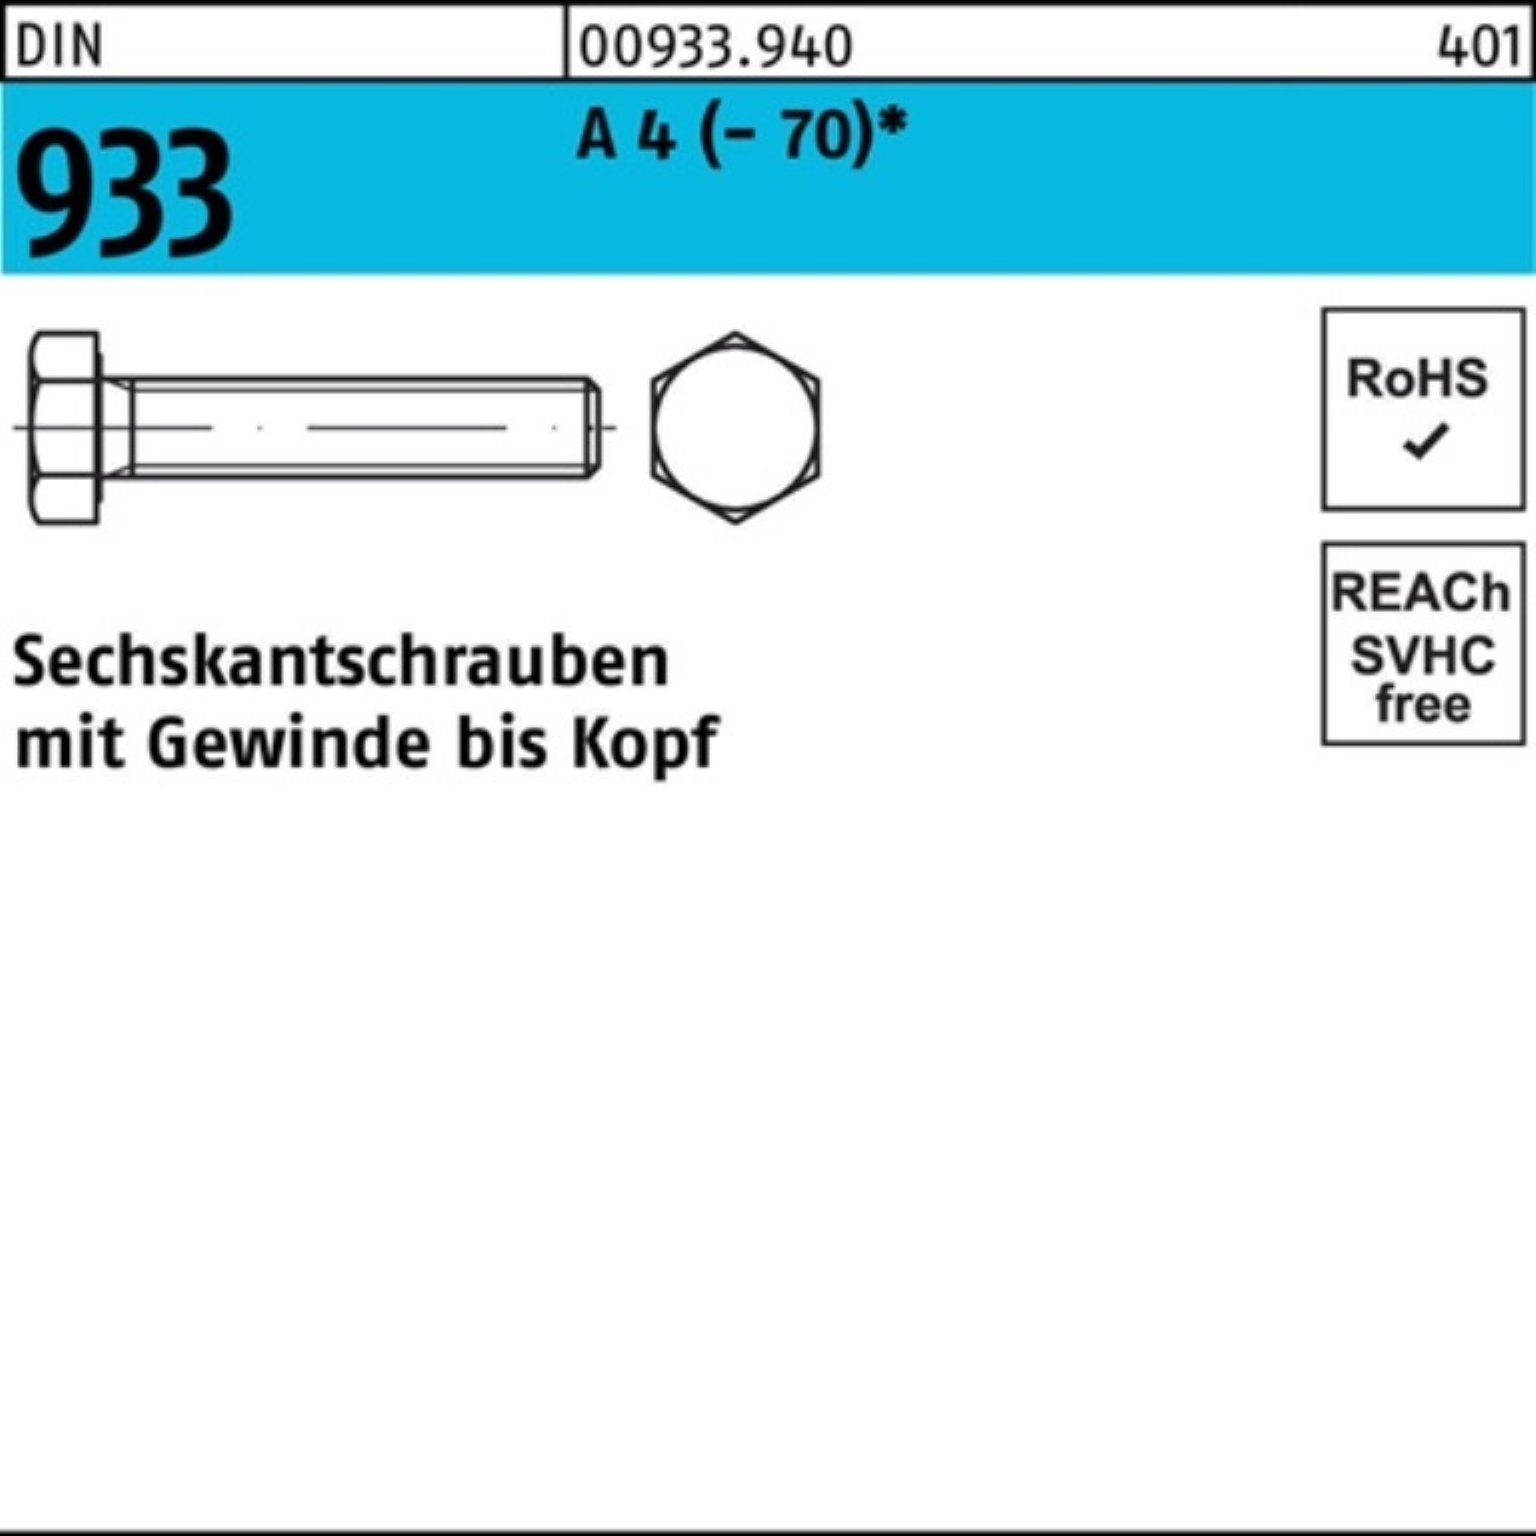 Reyher Sechskantschraube M22x 933 Sechskantschraube DIN 100er Pack VG 1 4 70 DI (70) A Stück